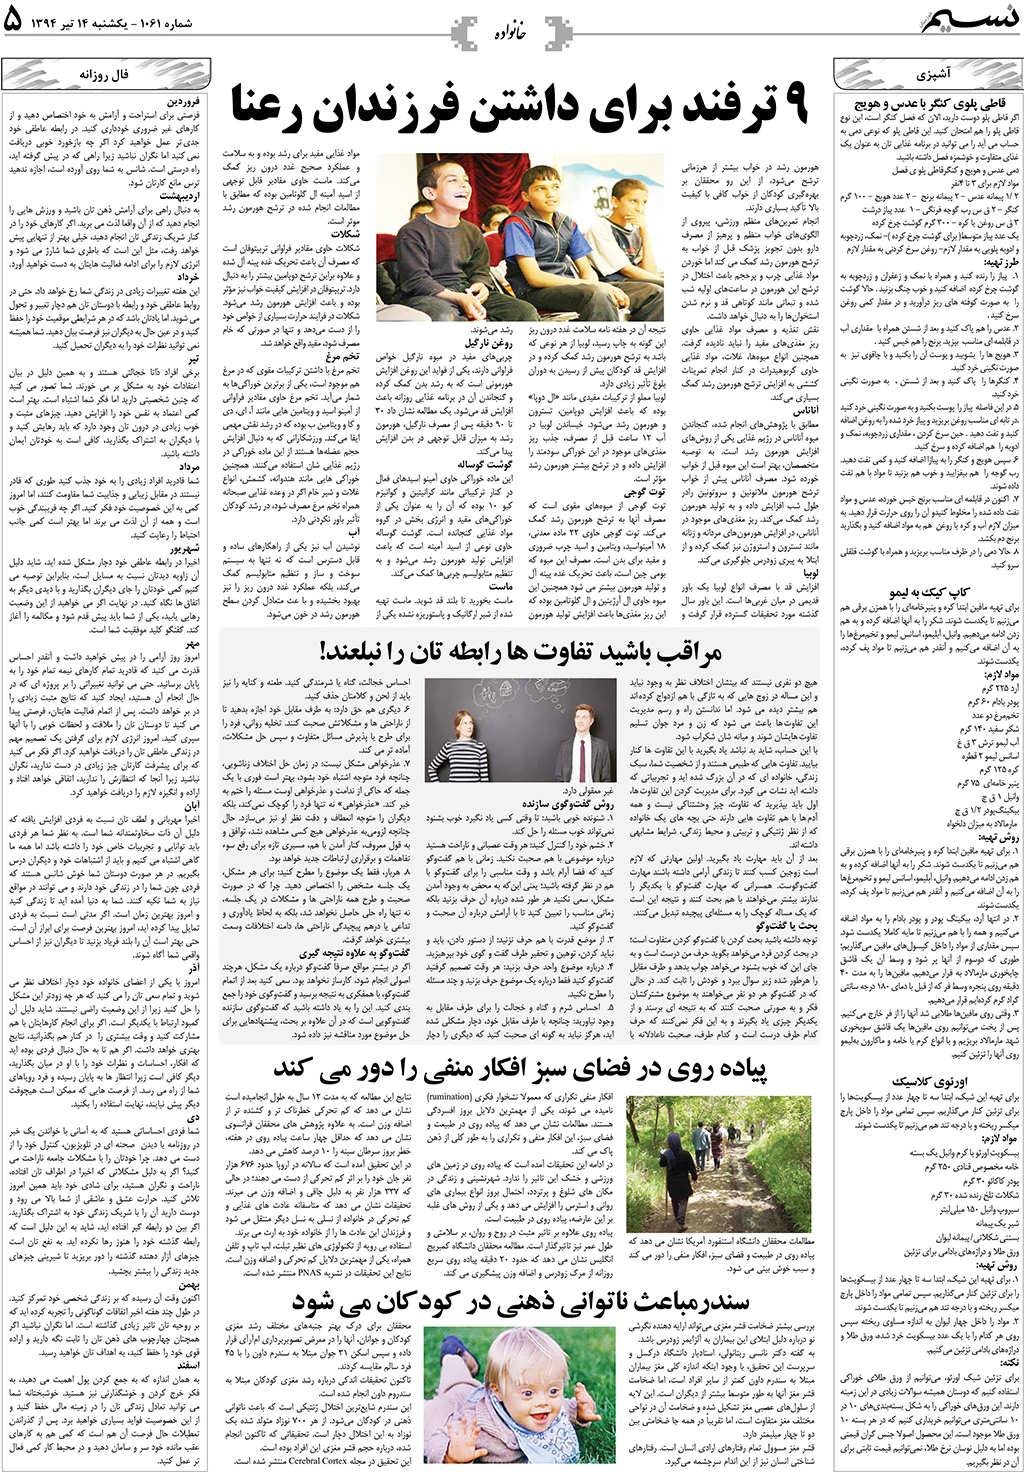 صفحه خانواده روزنامه نسیم شماره 1061